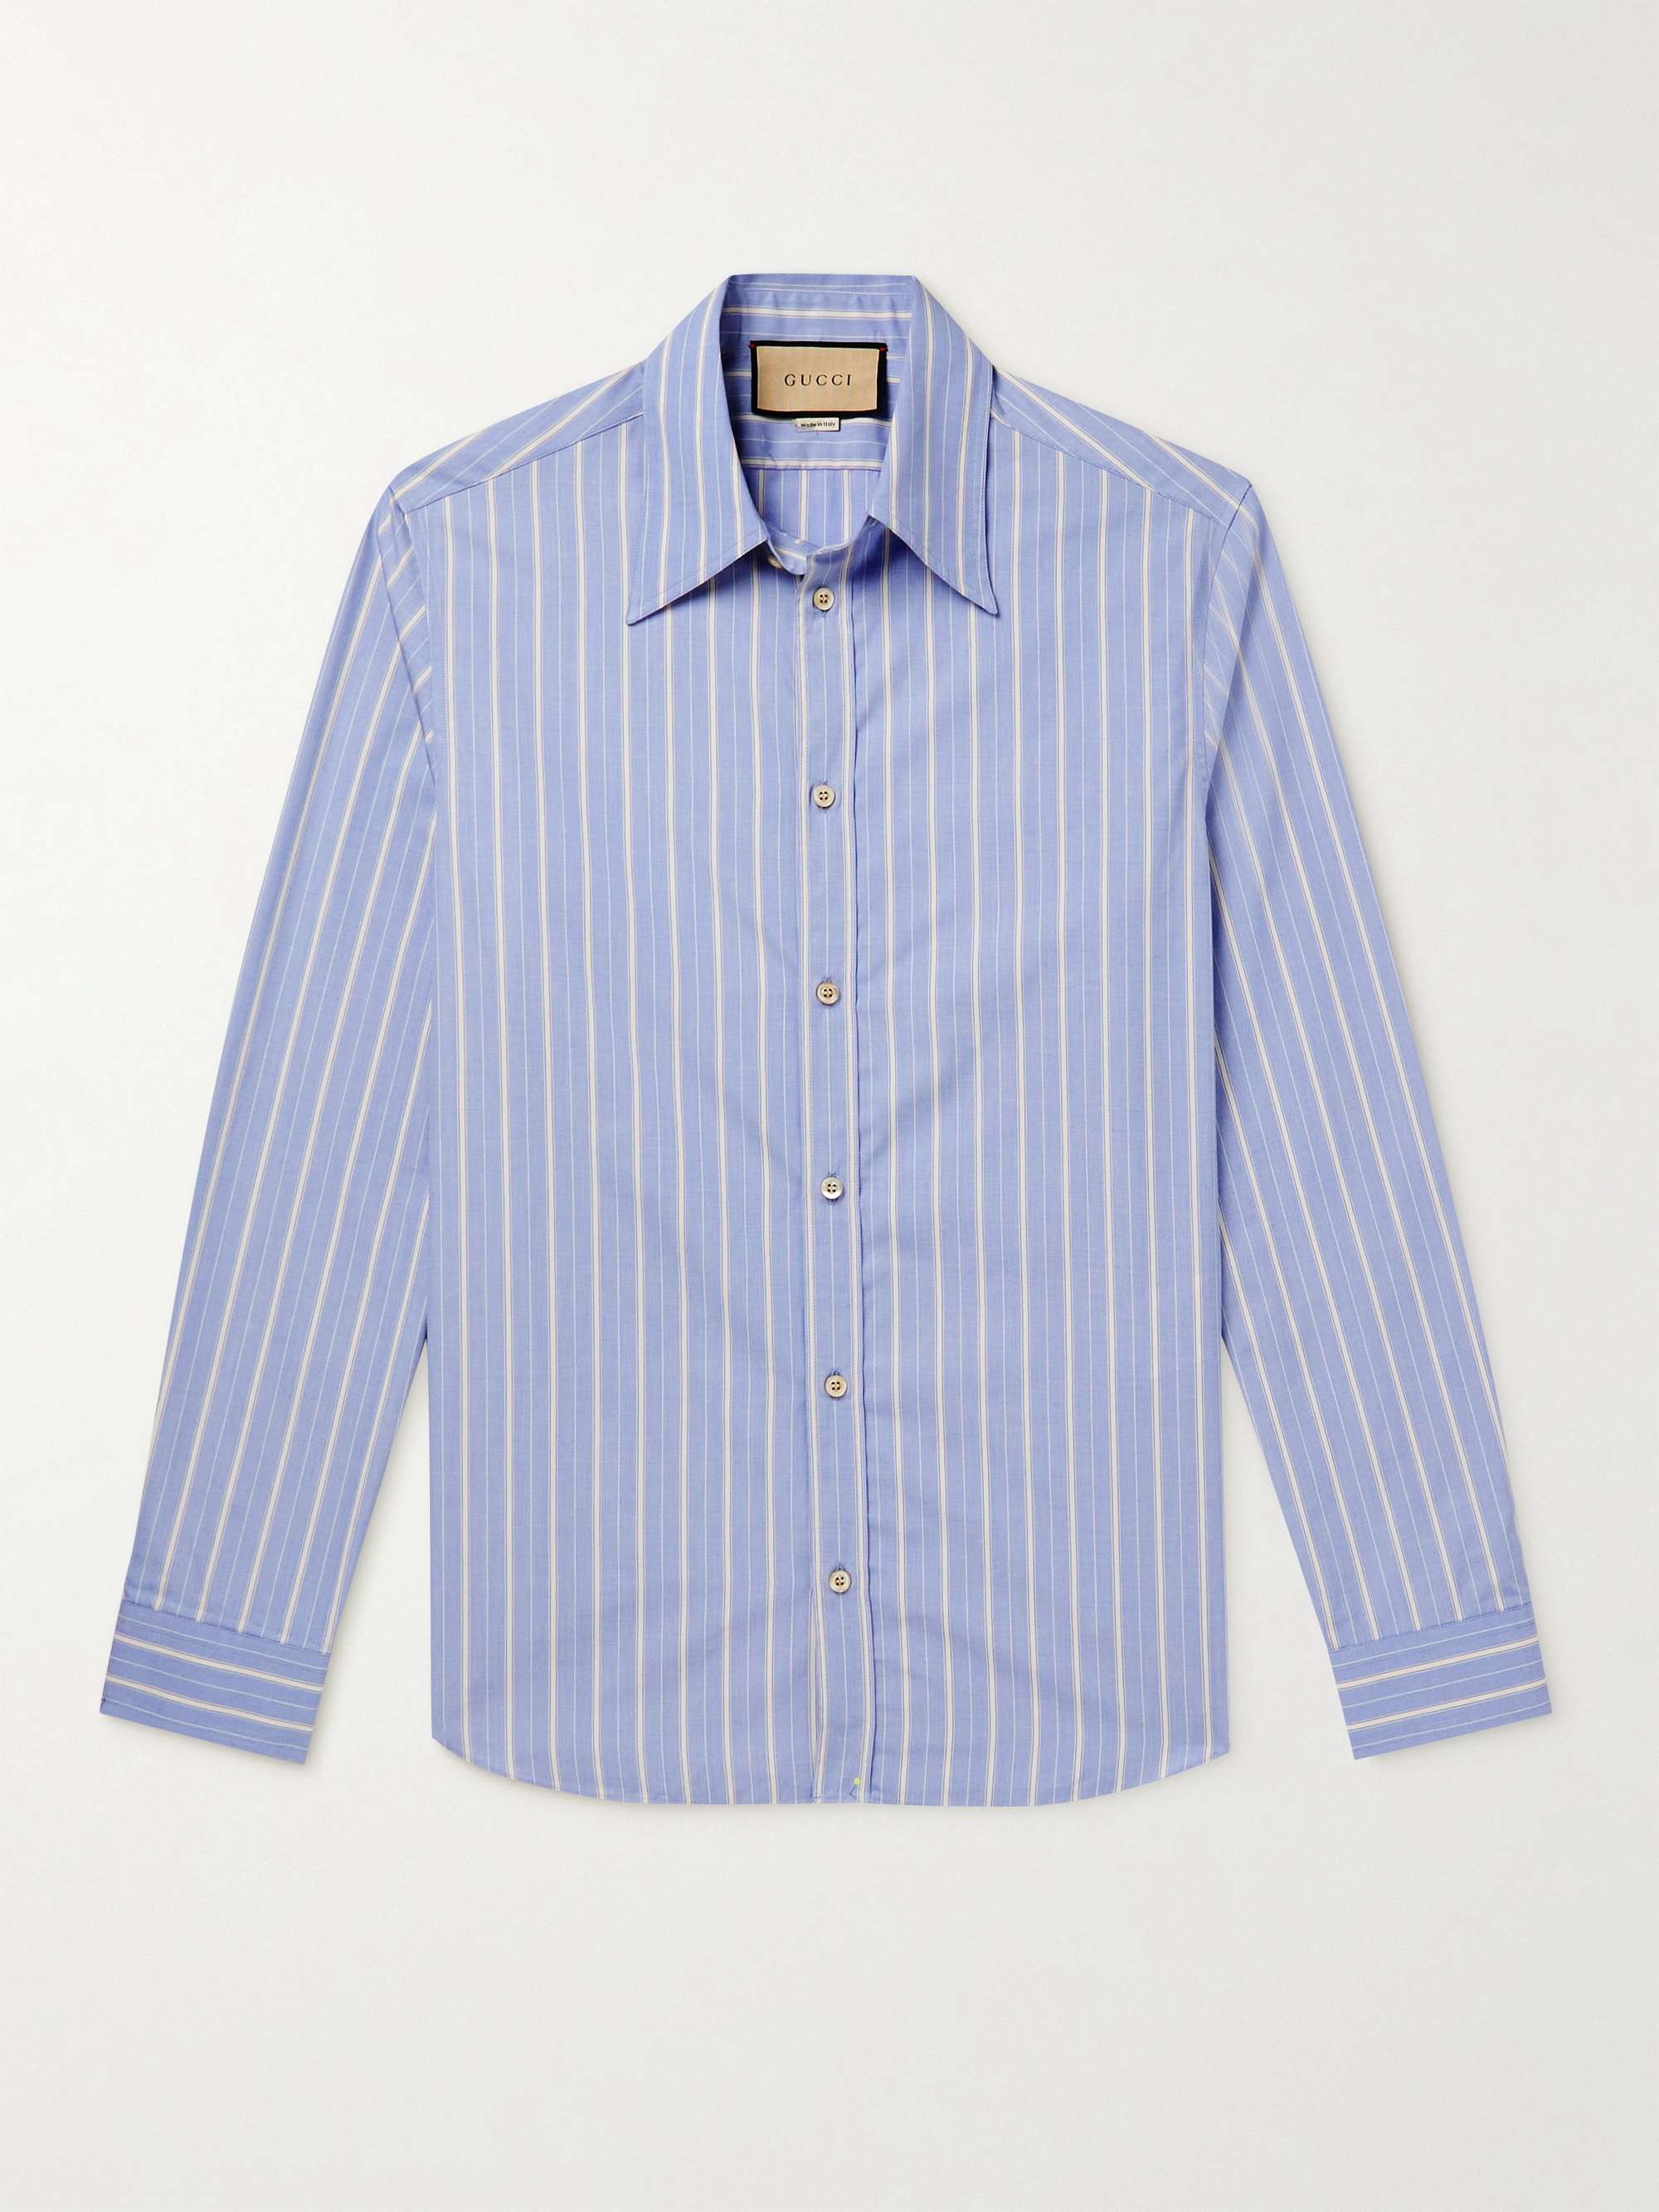 GUCCI Striped Cotton Oxford Shirt | MR PORTER